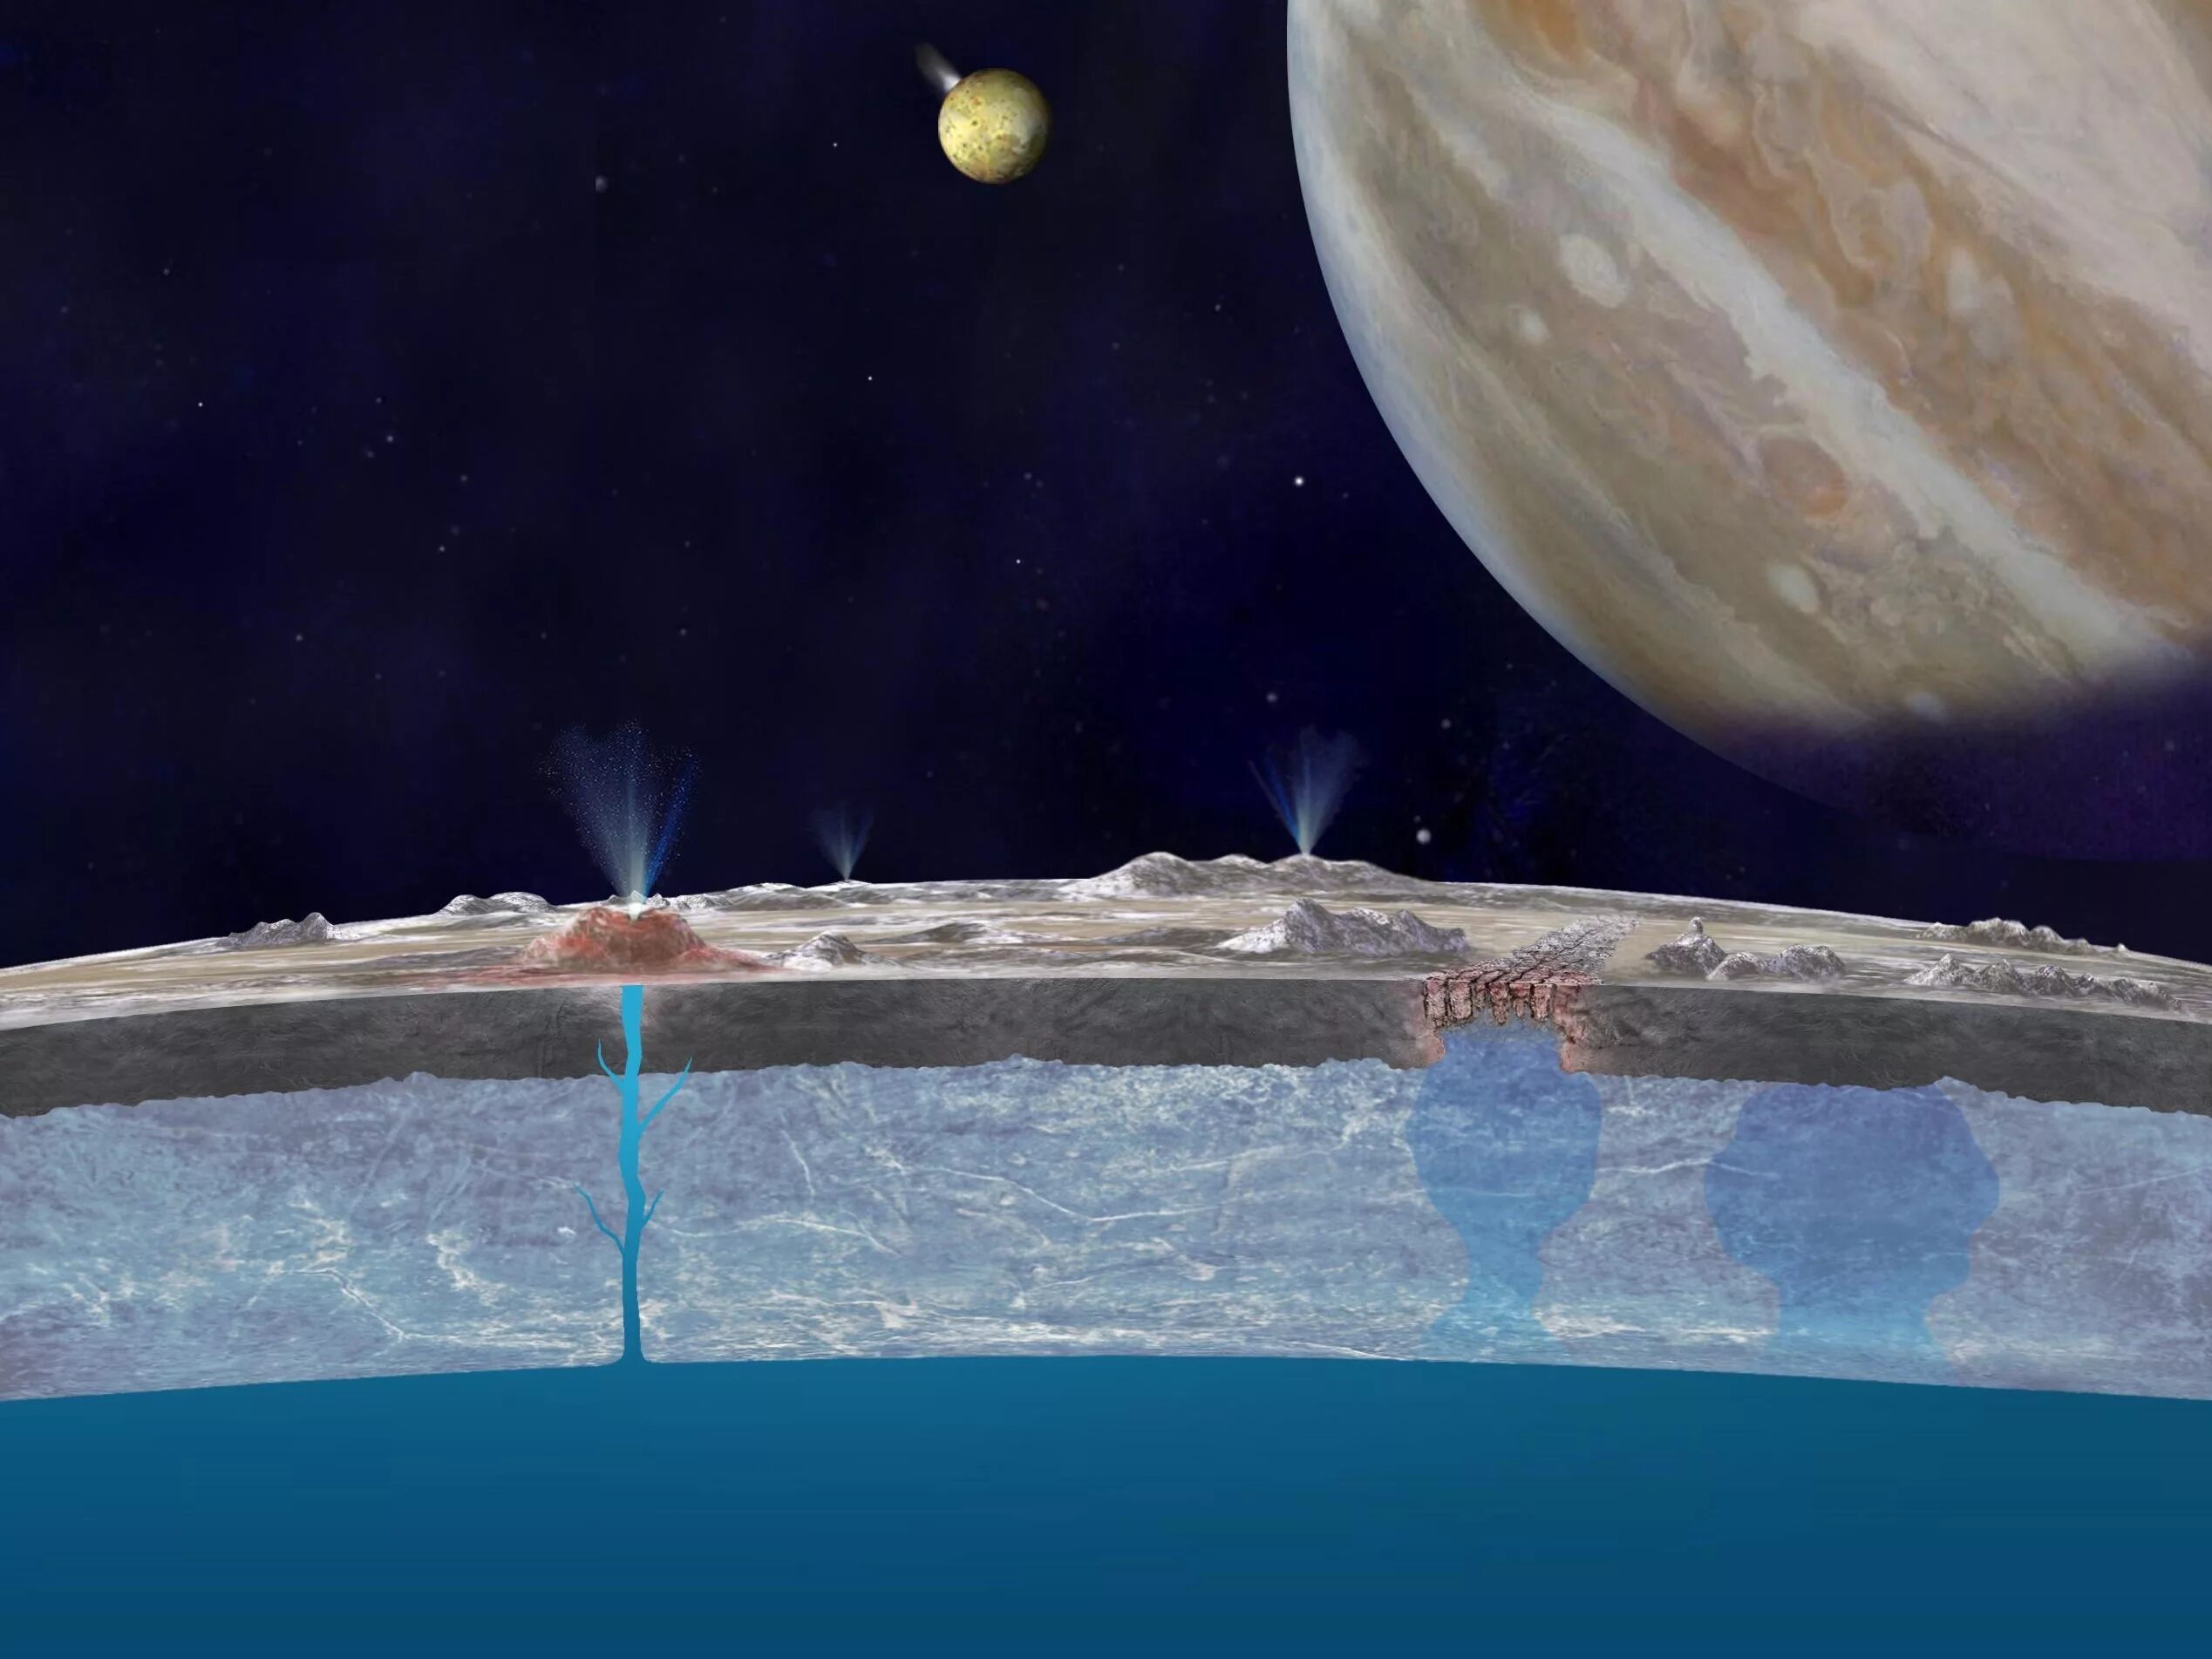 Самый большой океан в солнечной системе. Спутник Юпитера Европа вода. Европа Спутник Юпитера жизнь в океане. Поверхность Европы спутника Юпитера. Атмосфера Европы спутника Юпитера.